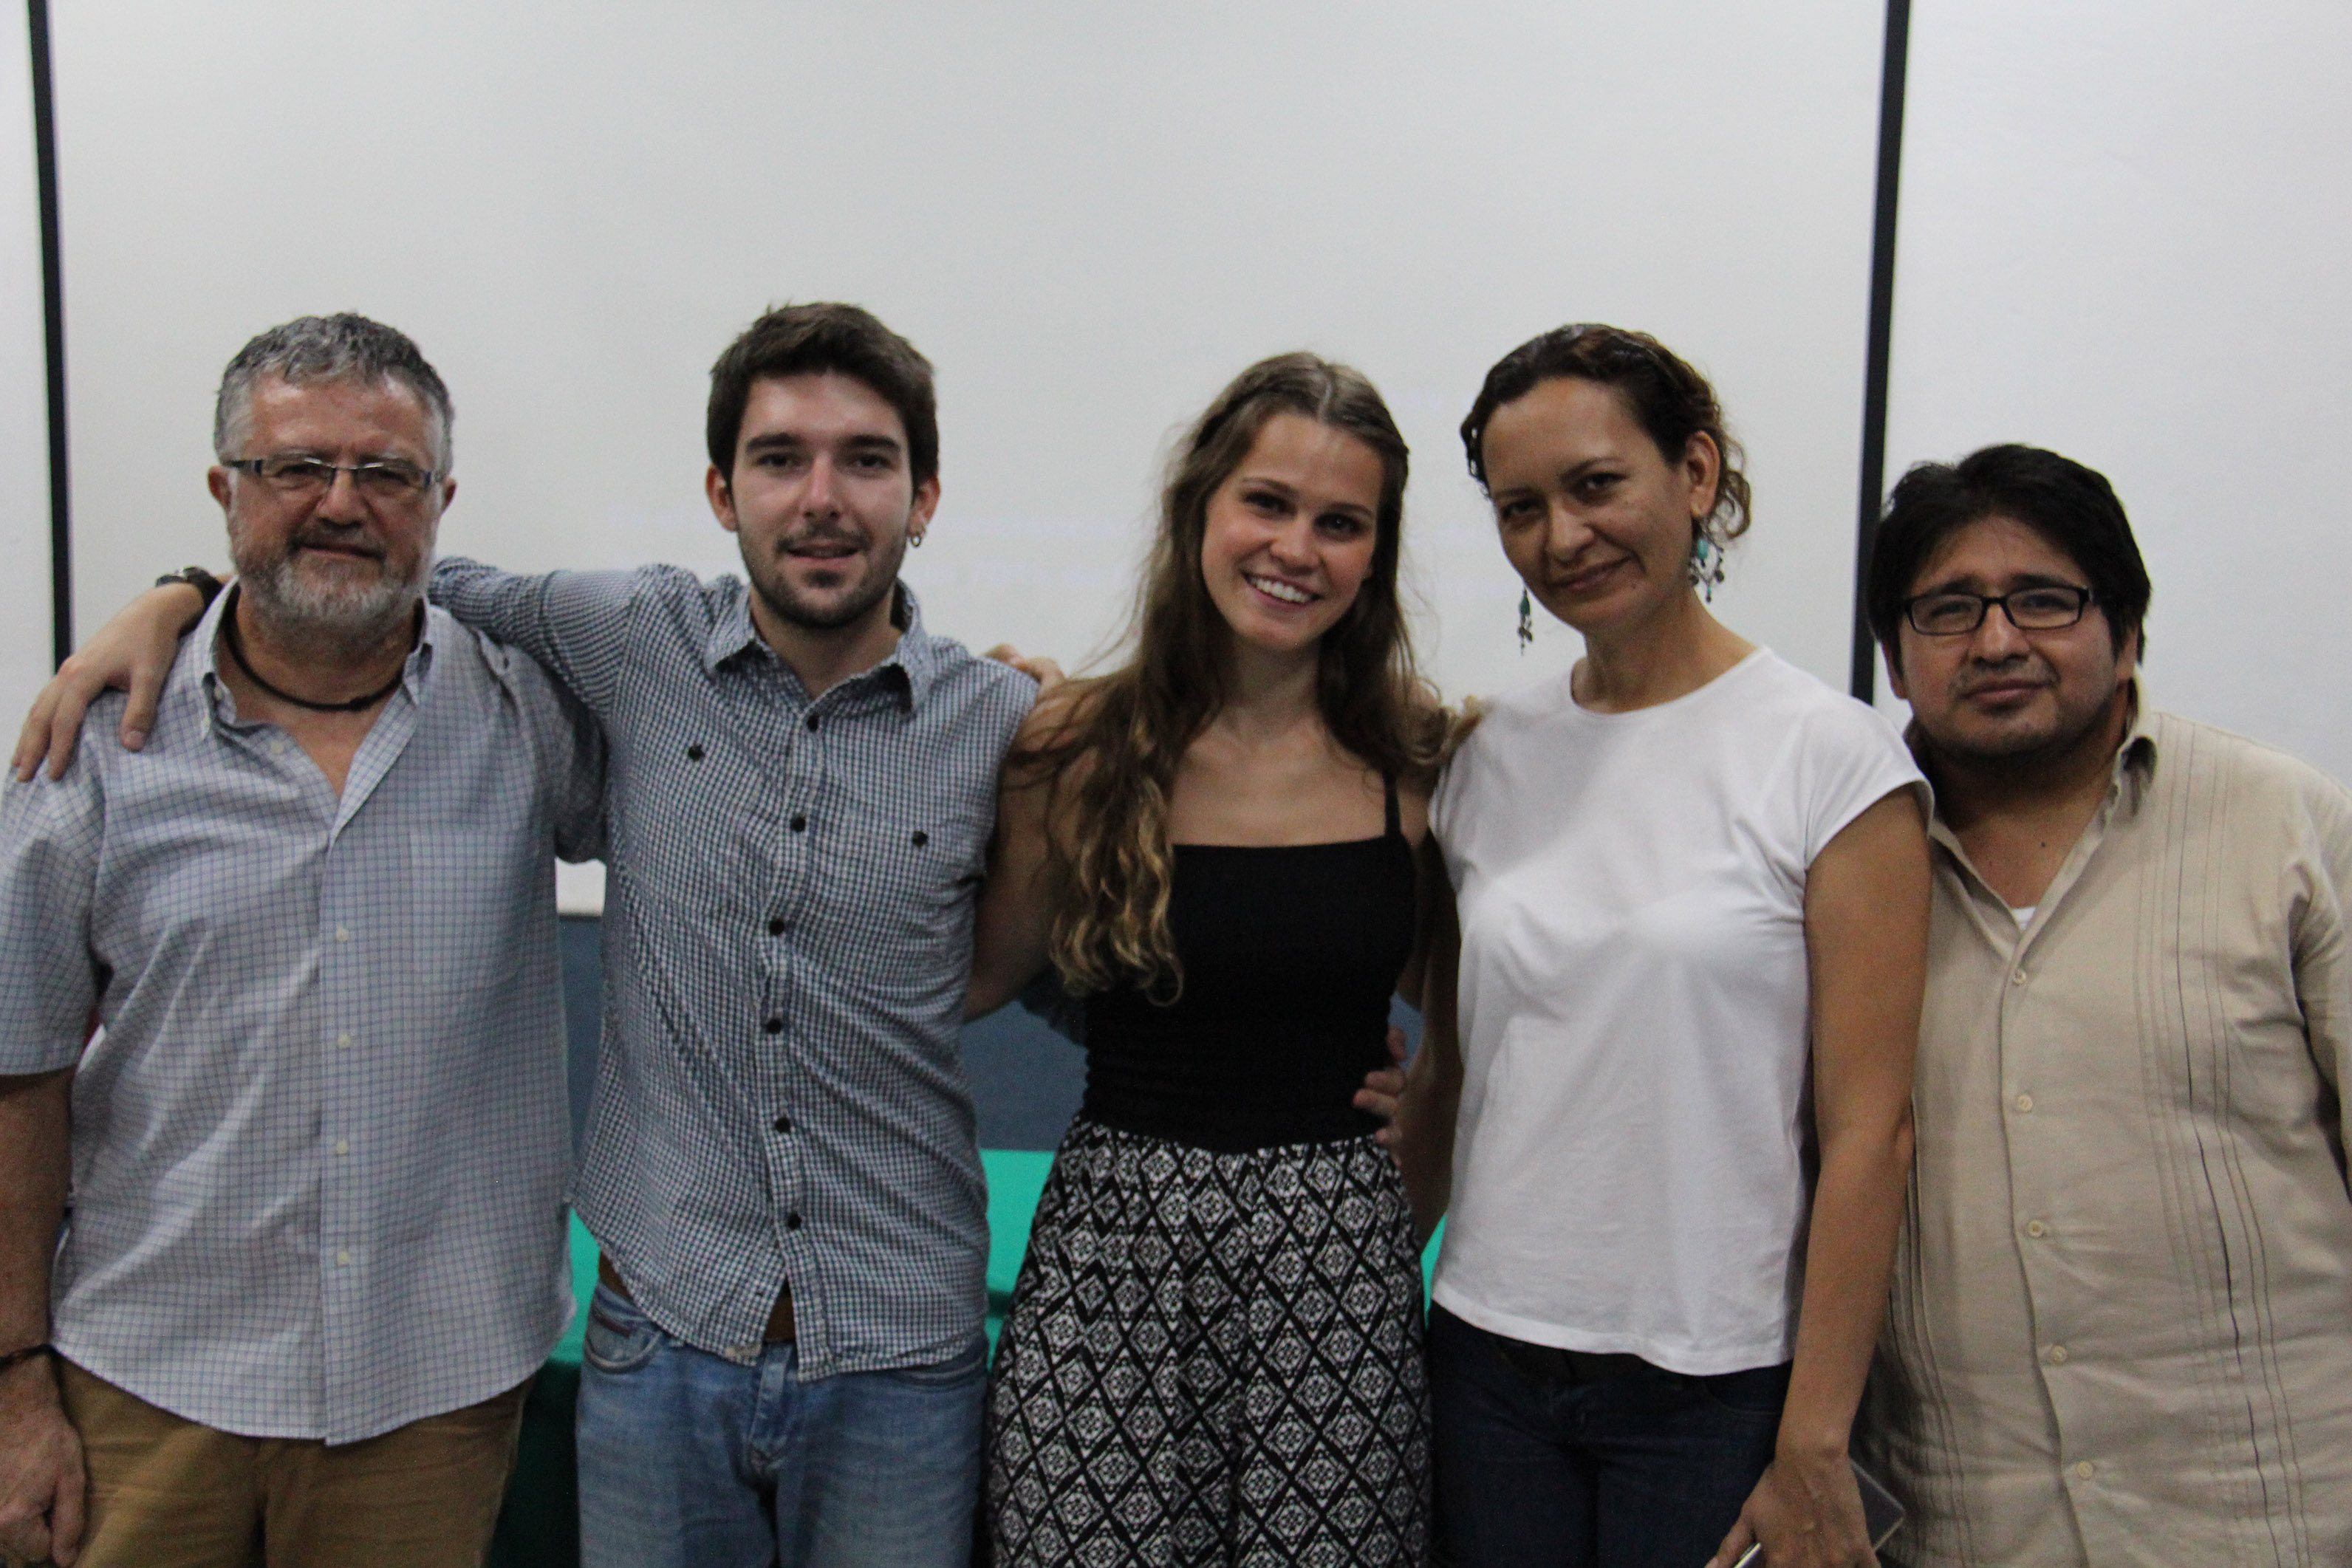 Estudiantes de la Universidad de Girona concluyen estancia en Ecosur con proyecto “Ciudadanía, migración y derechos humanos”